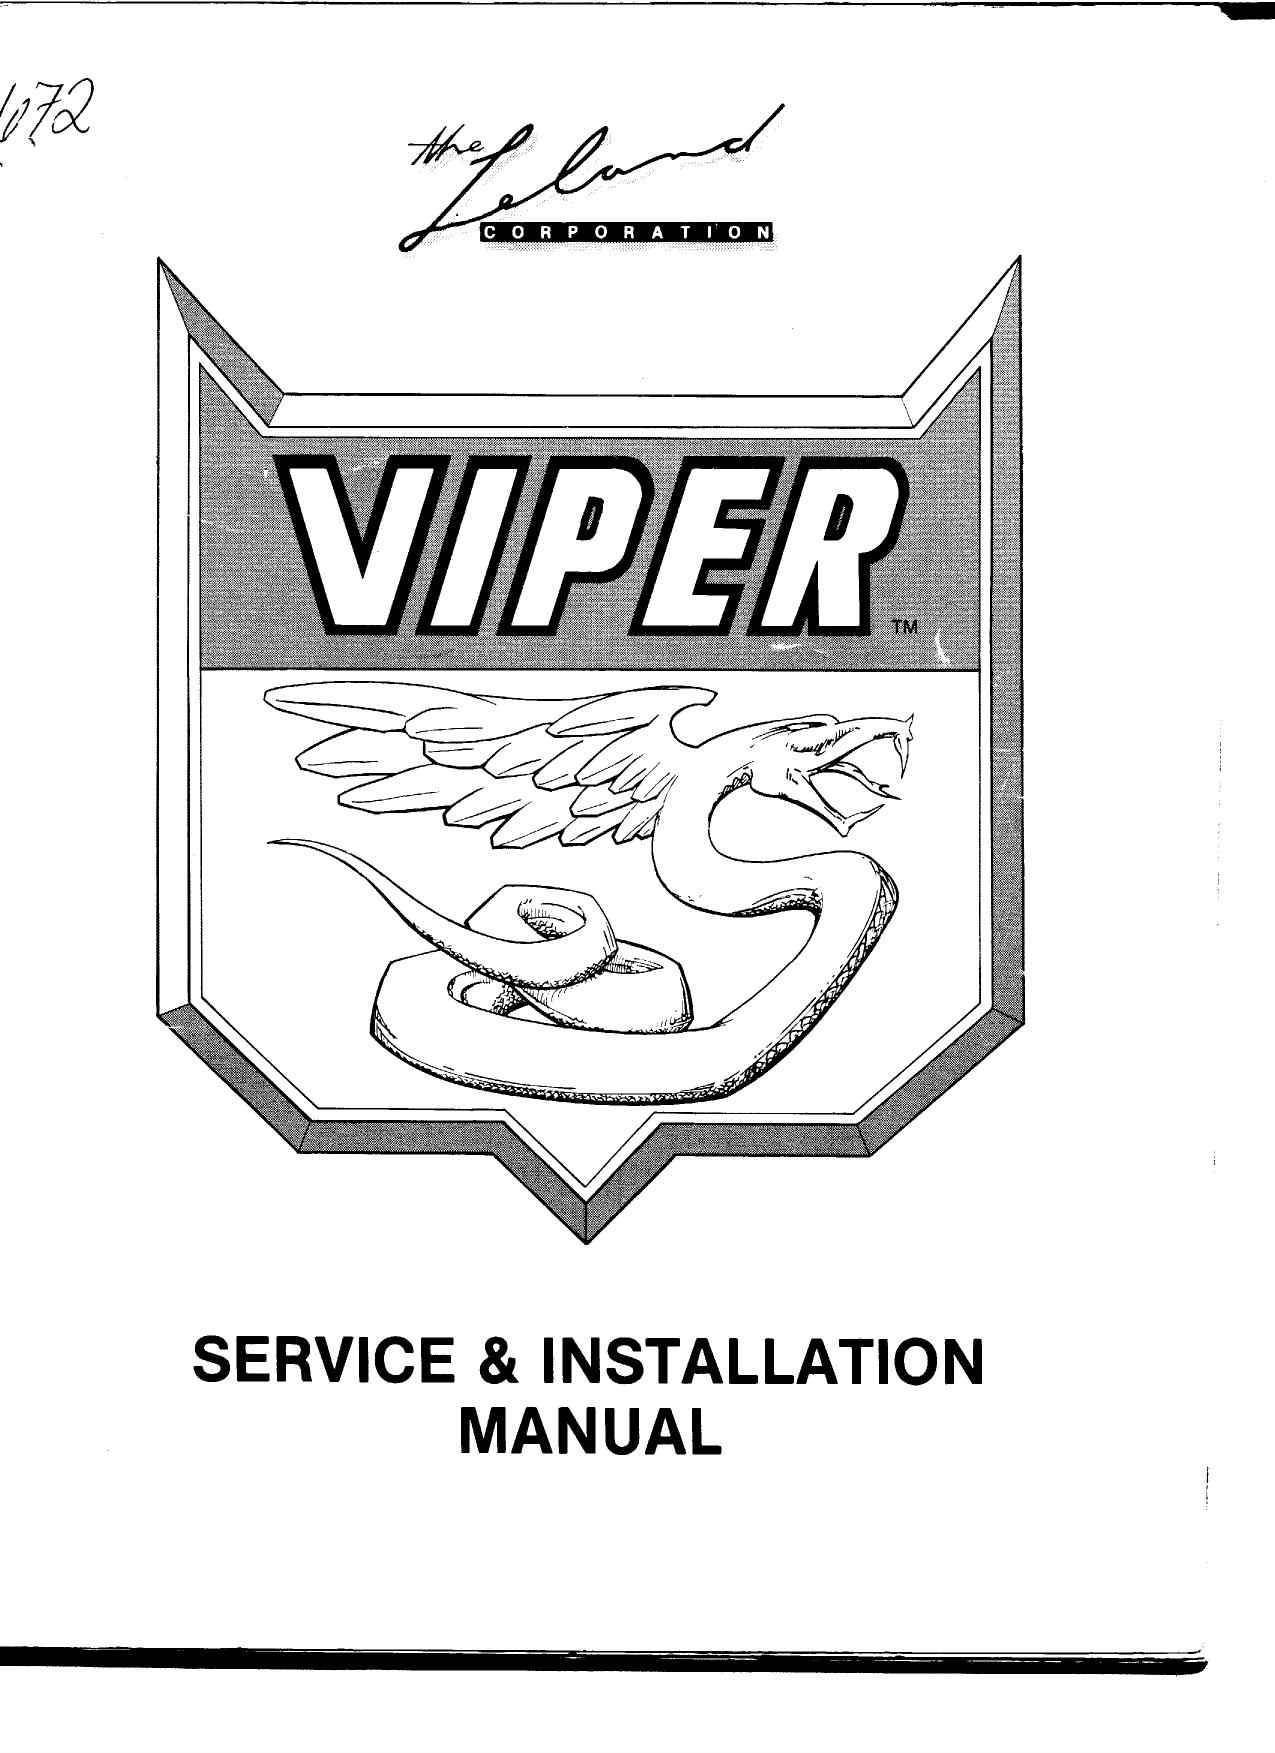 Viper Manual